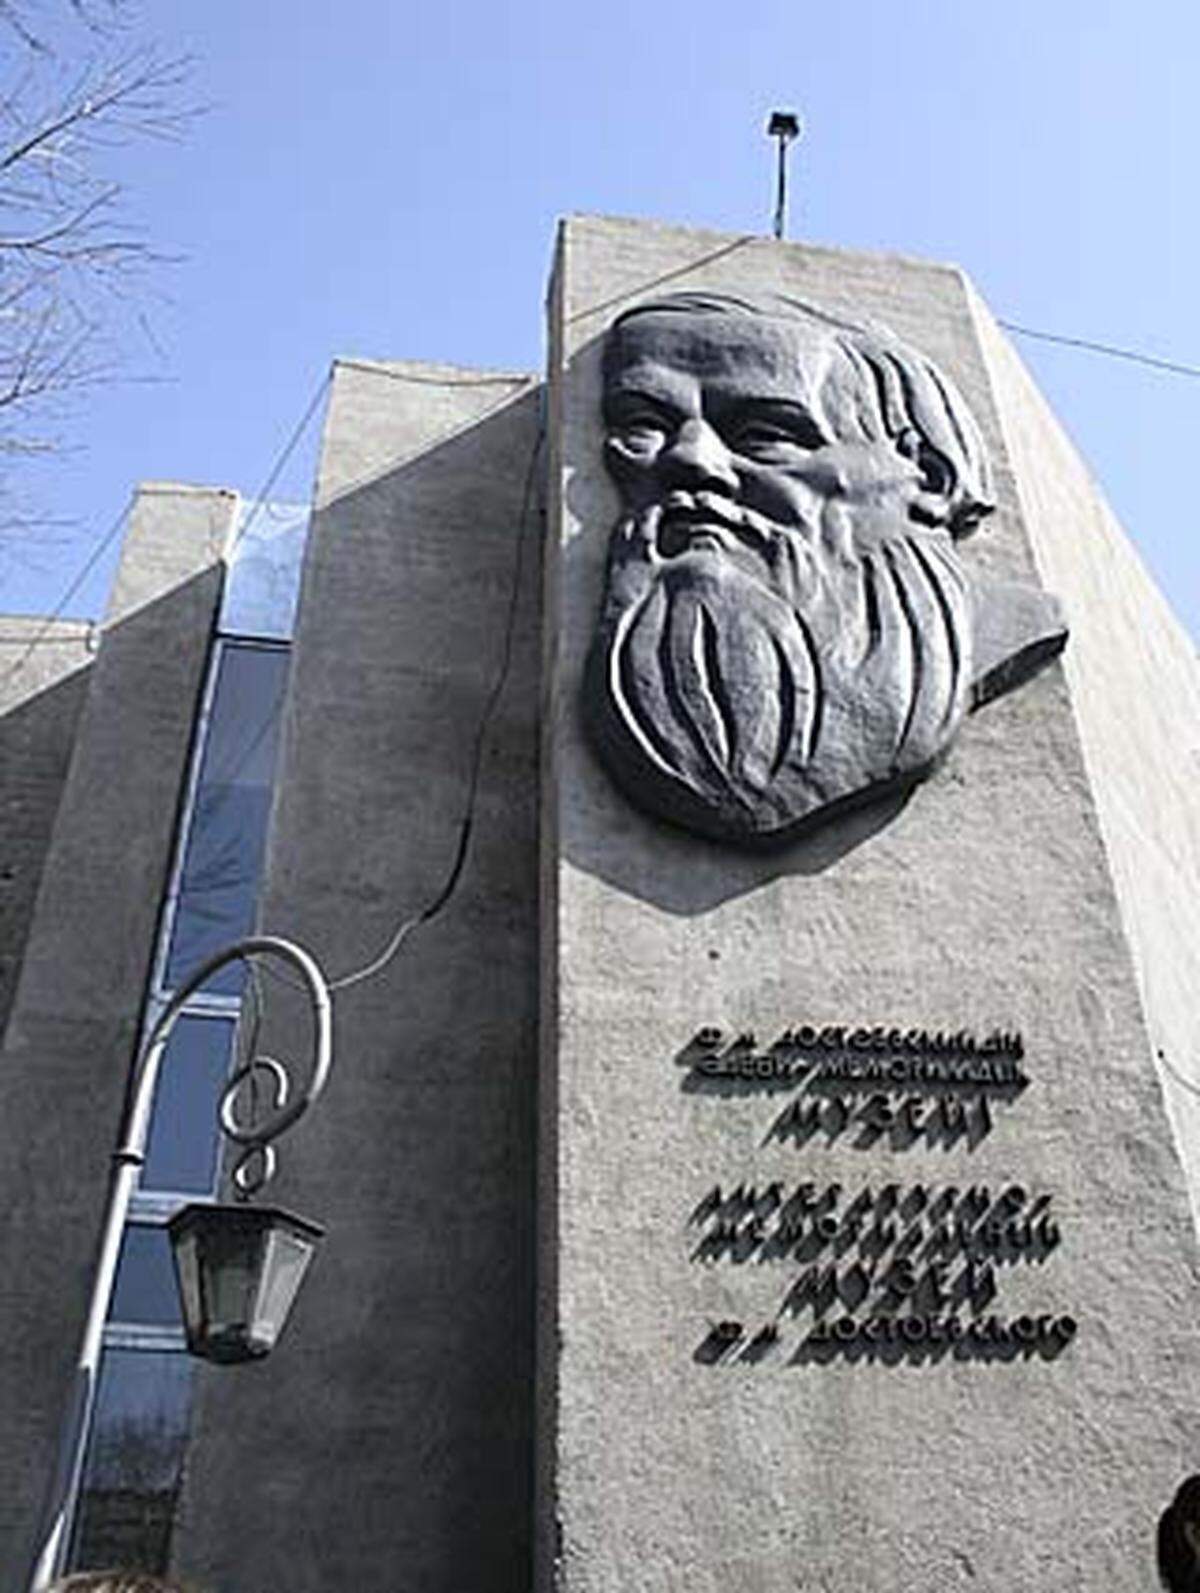 Das Dostojewski-Museum. Der russische Literat Fjodor Dostojewski verbrachte fünf Jahre in Semipalatinsk nach seiner Entlassung aus dem Straflager.Seine Erlebnisse verarbeitete er in seinem Buch "Aufzeichnungen aus einem Totenhaus".